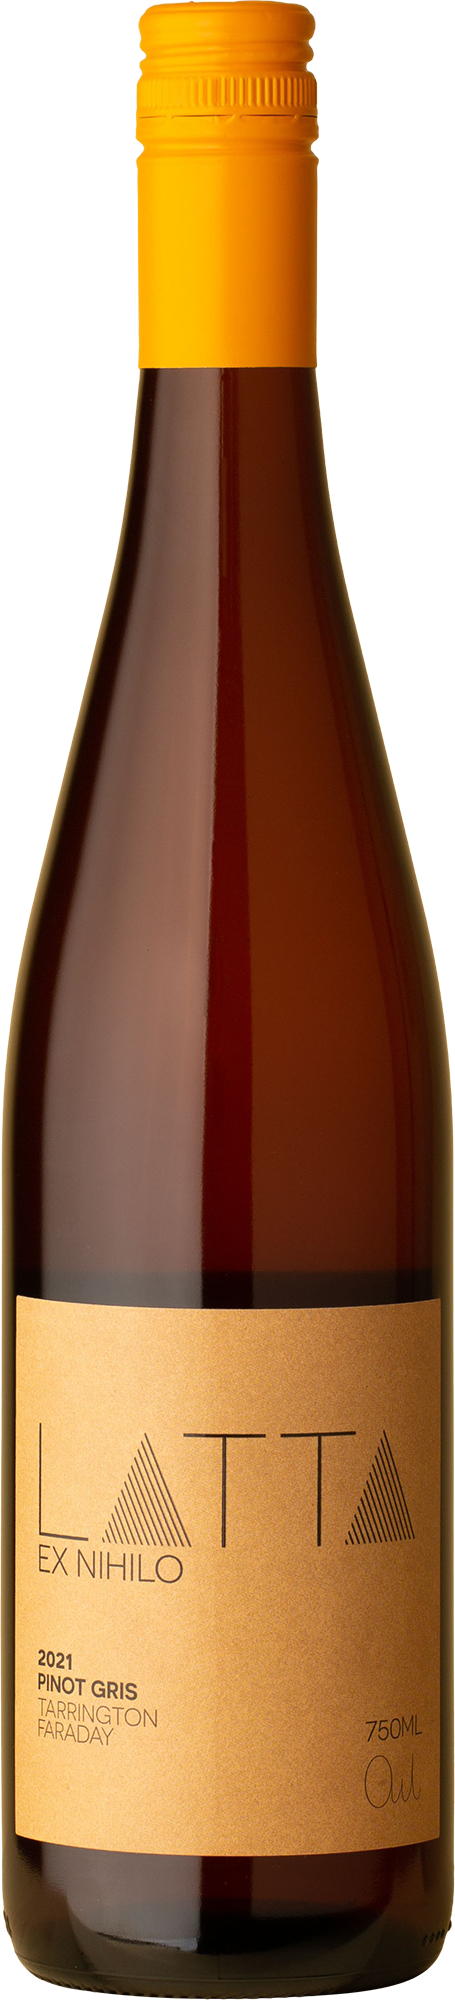 Latta - Ex Nihilo Pinot Gris 2021 Rosé